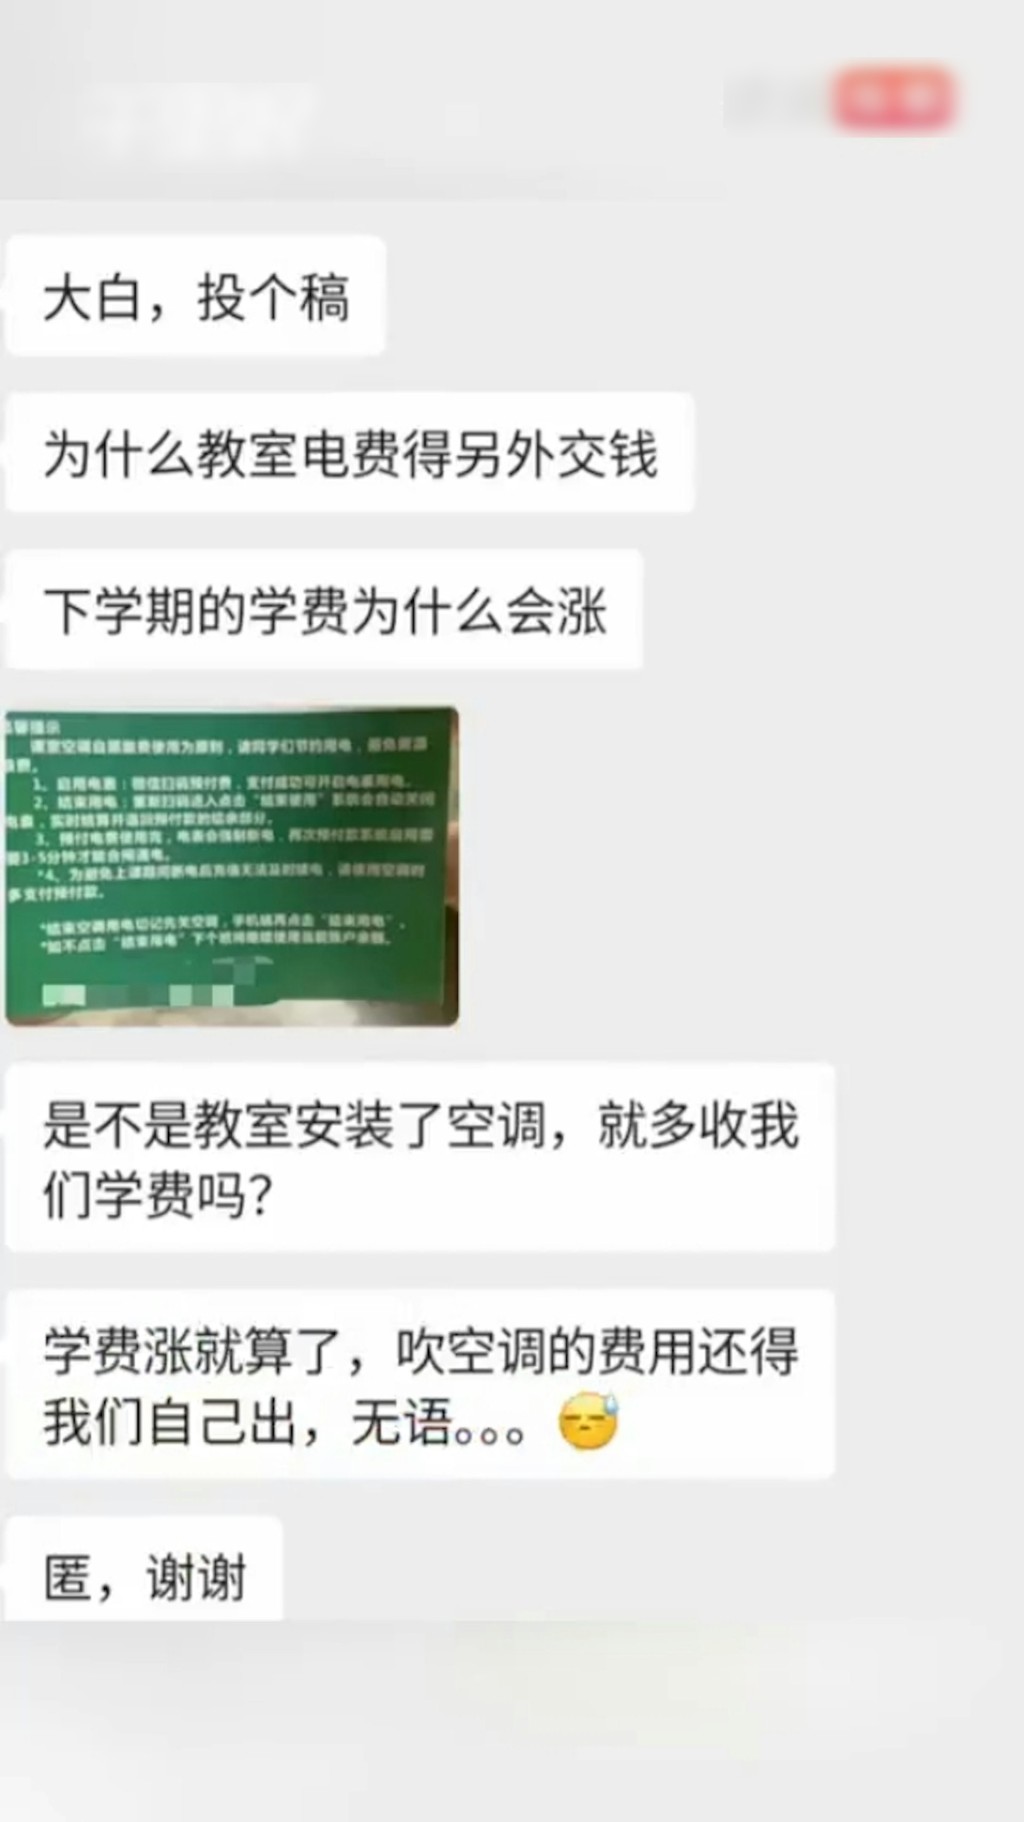 惠州有高校要求学生扫QR Code付钱才可开冷气上堂，遭外界质疑。